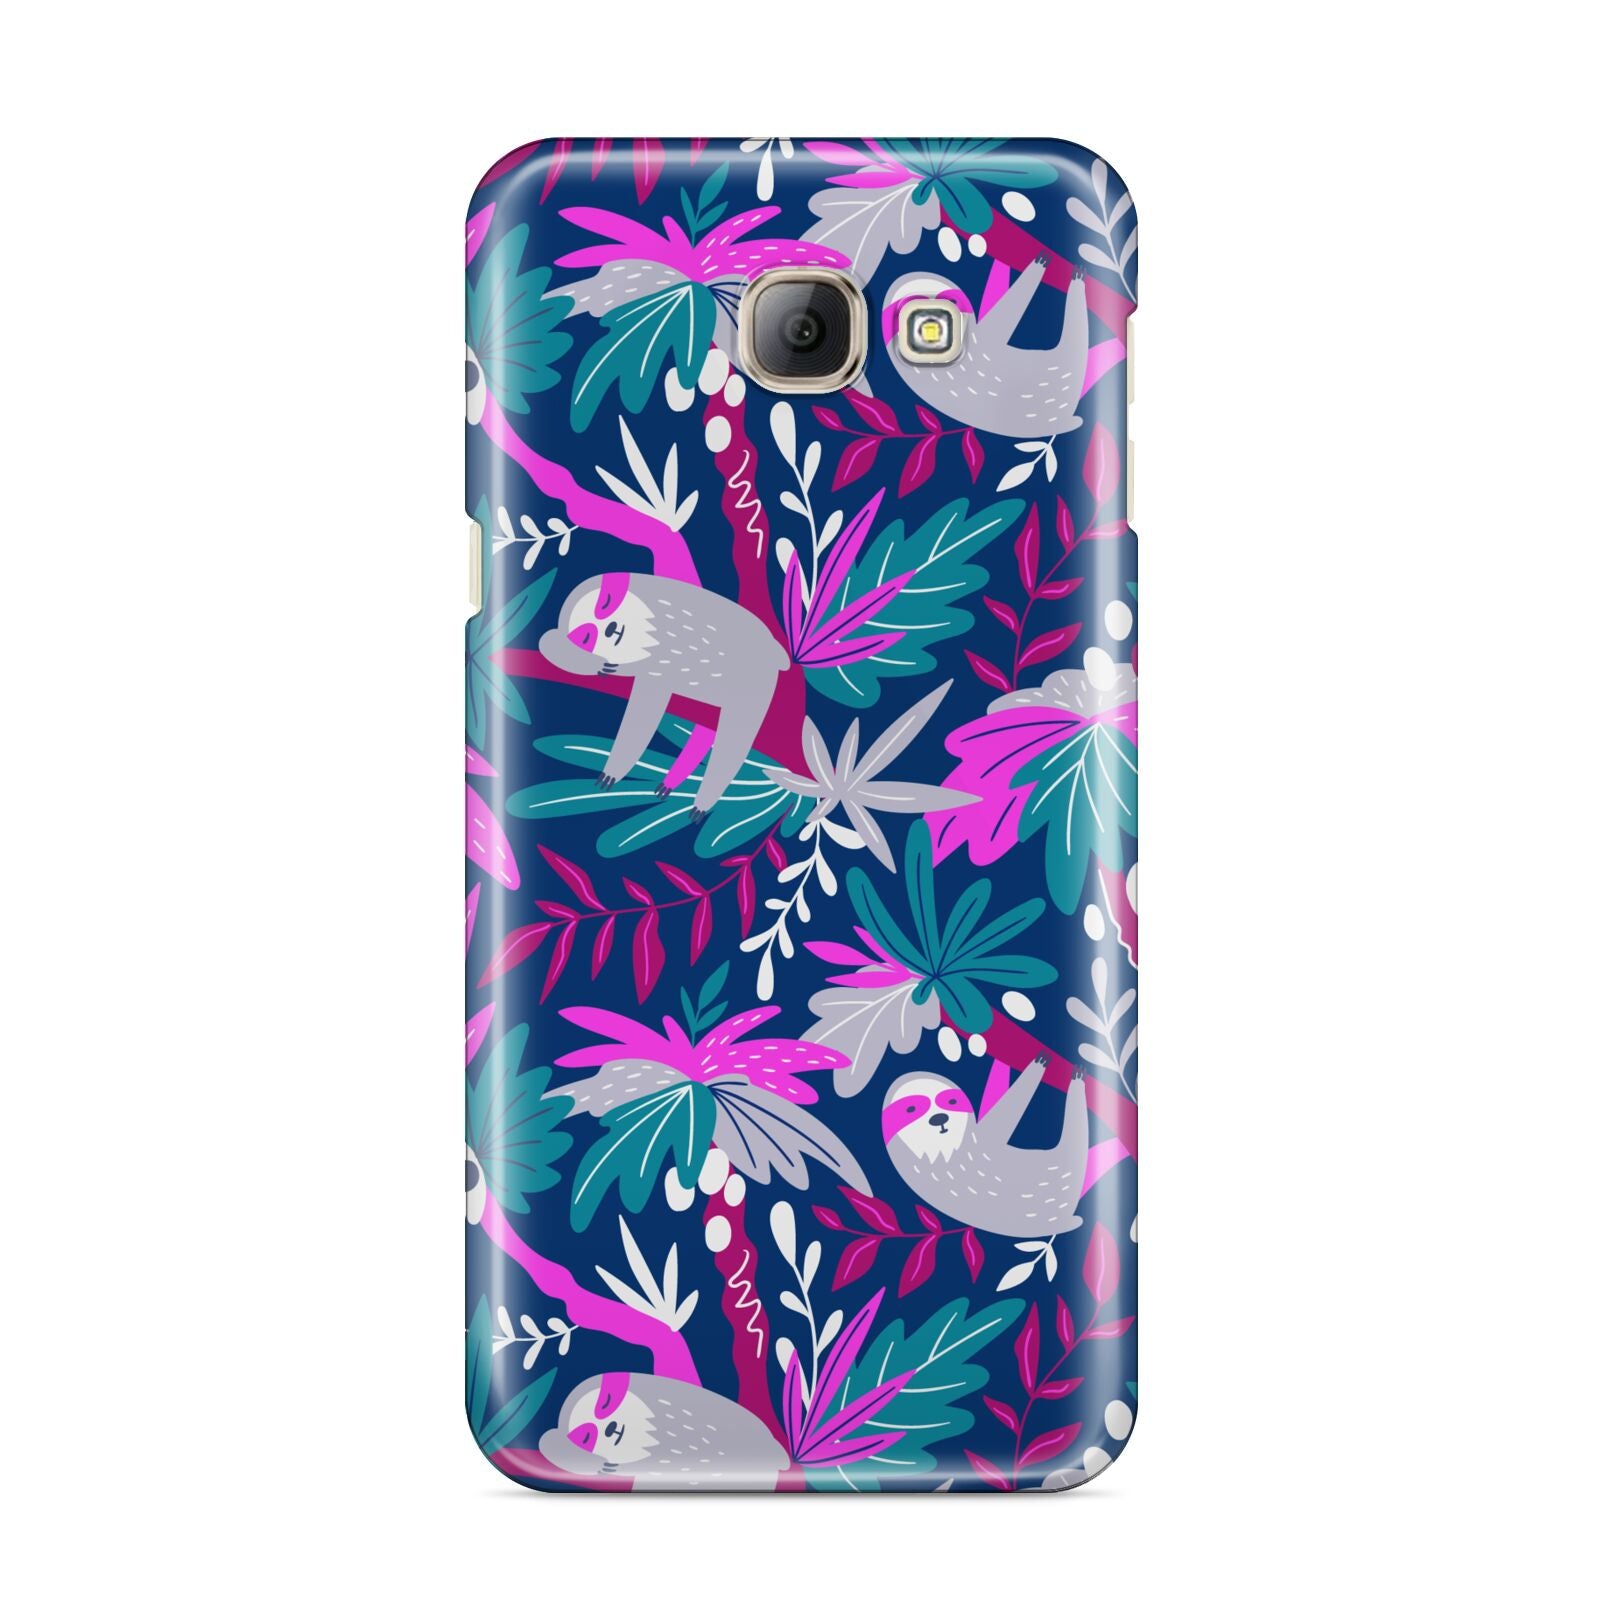 Sloth Samsung Galaxy A8 2016 Case